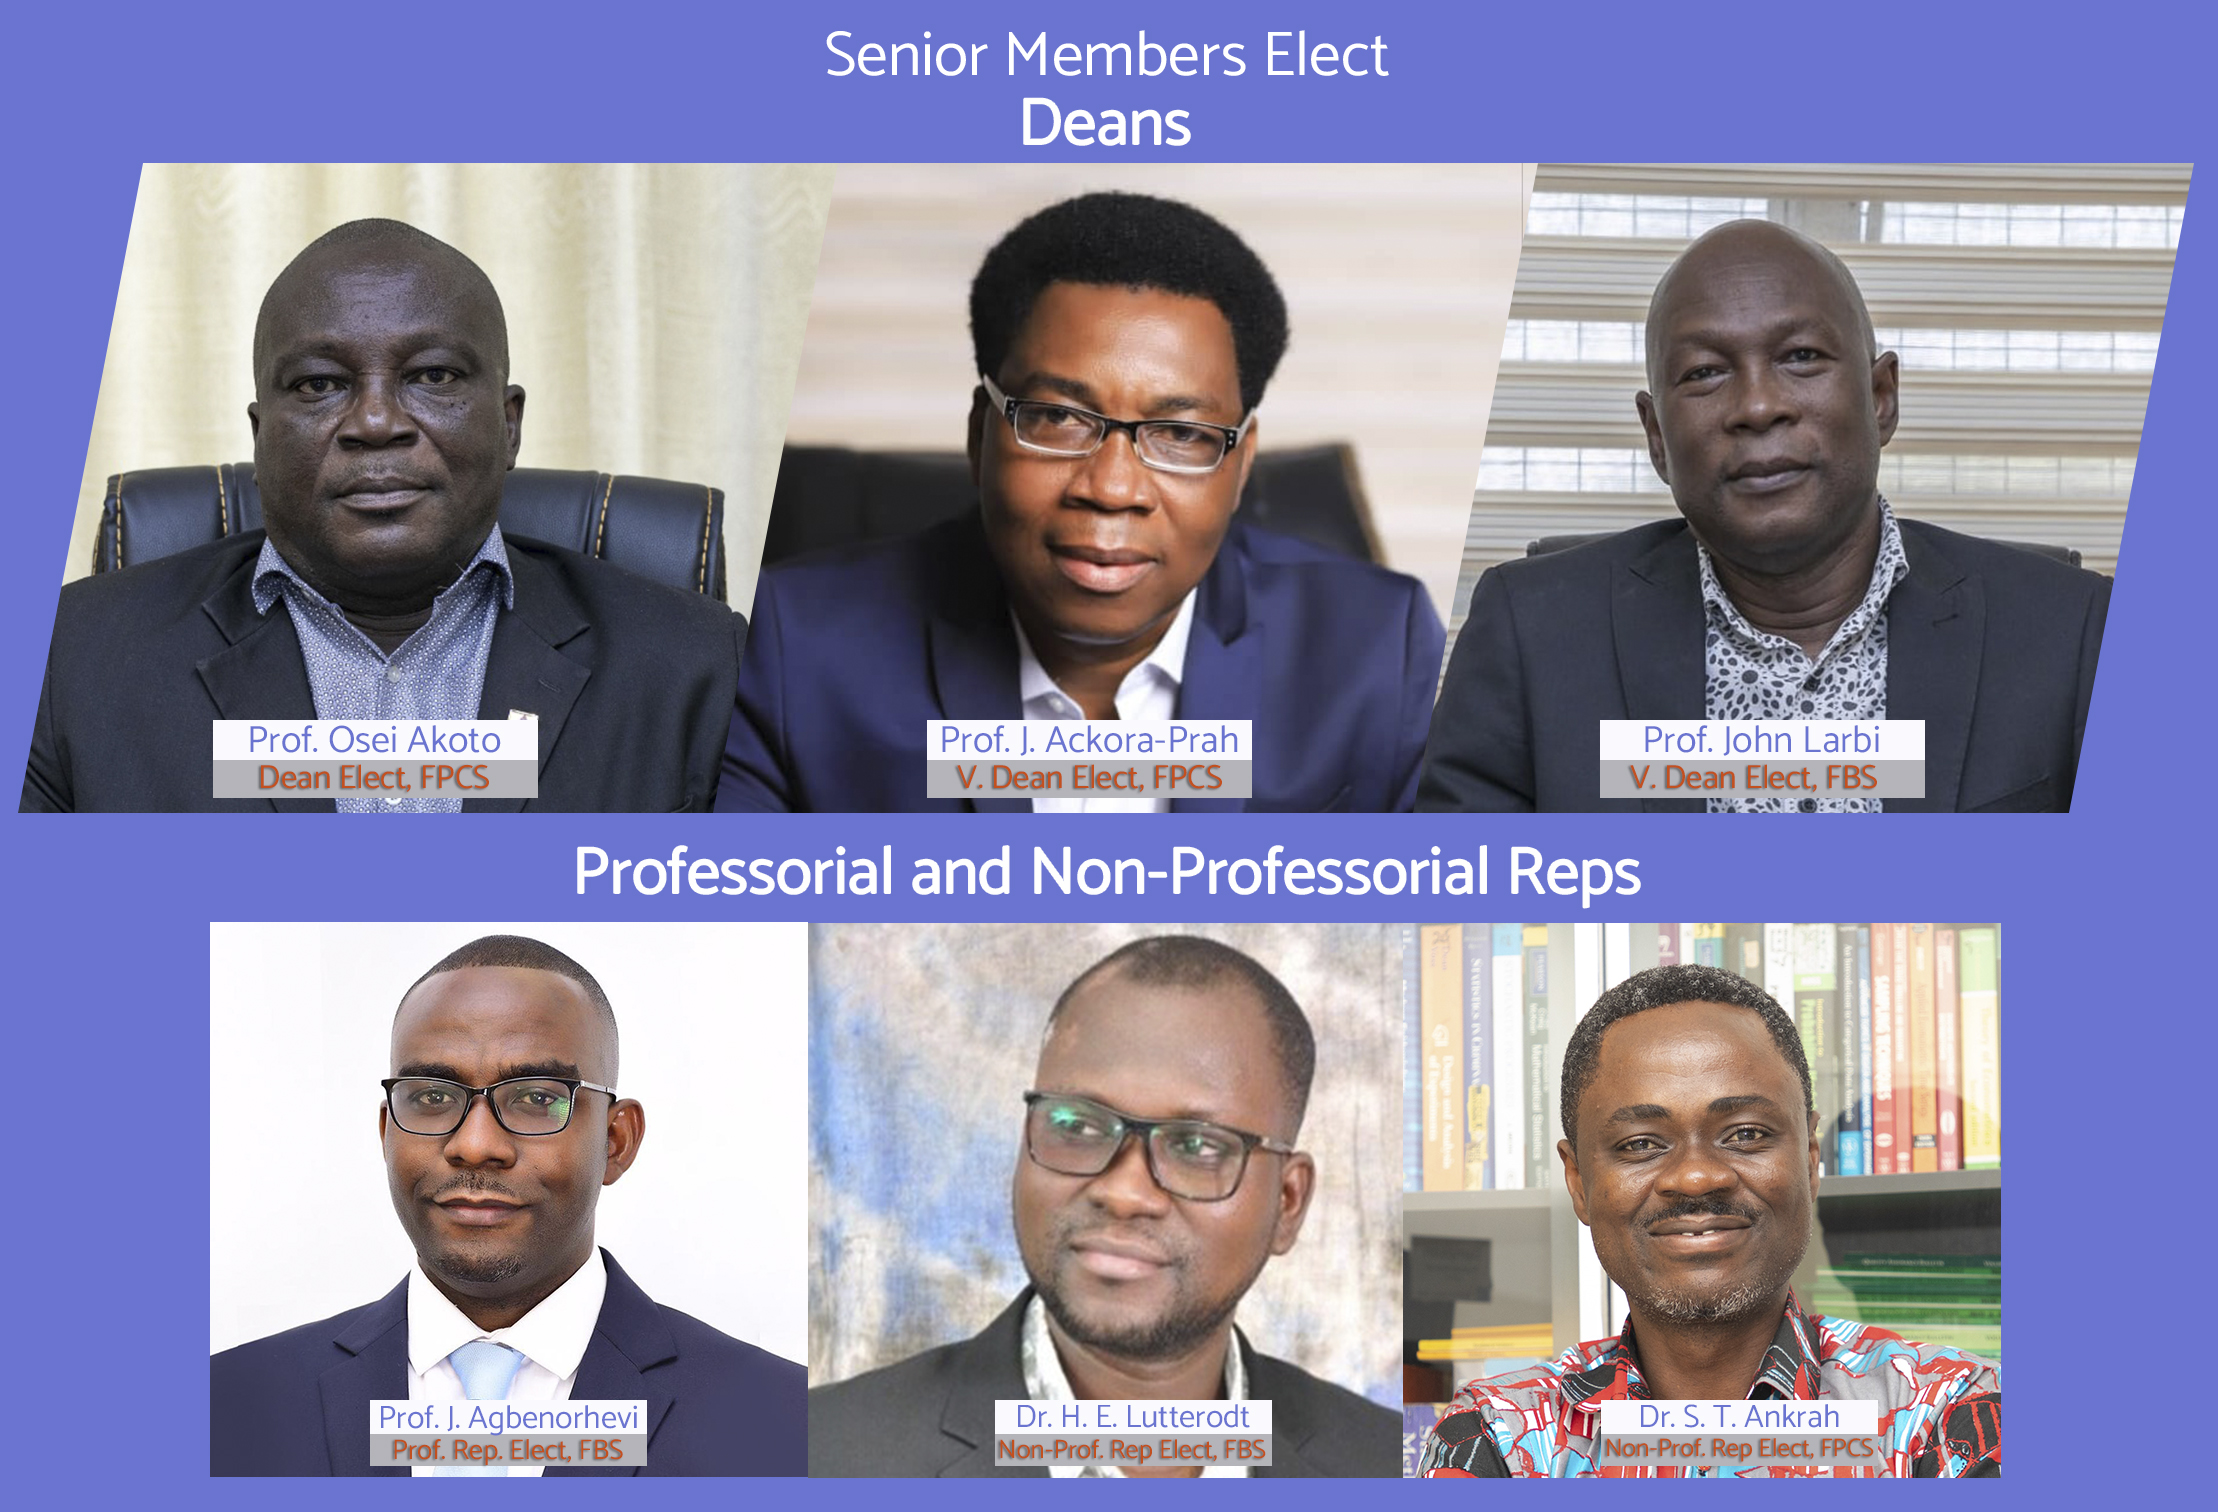 the Senior Members elect